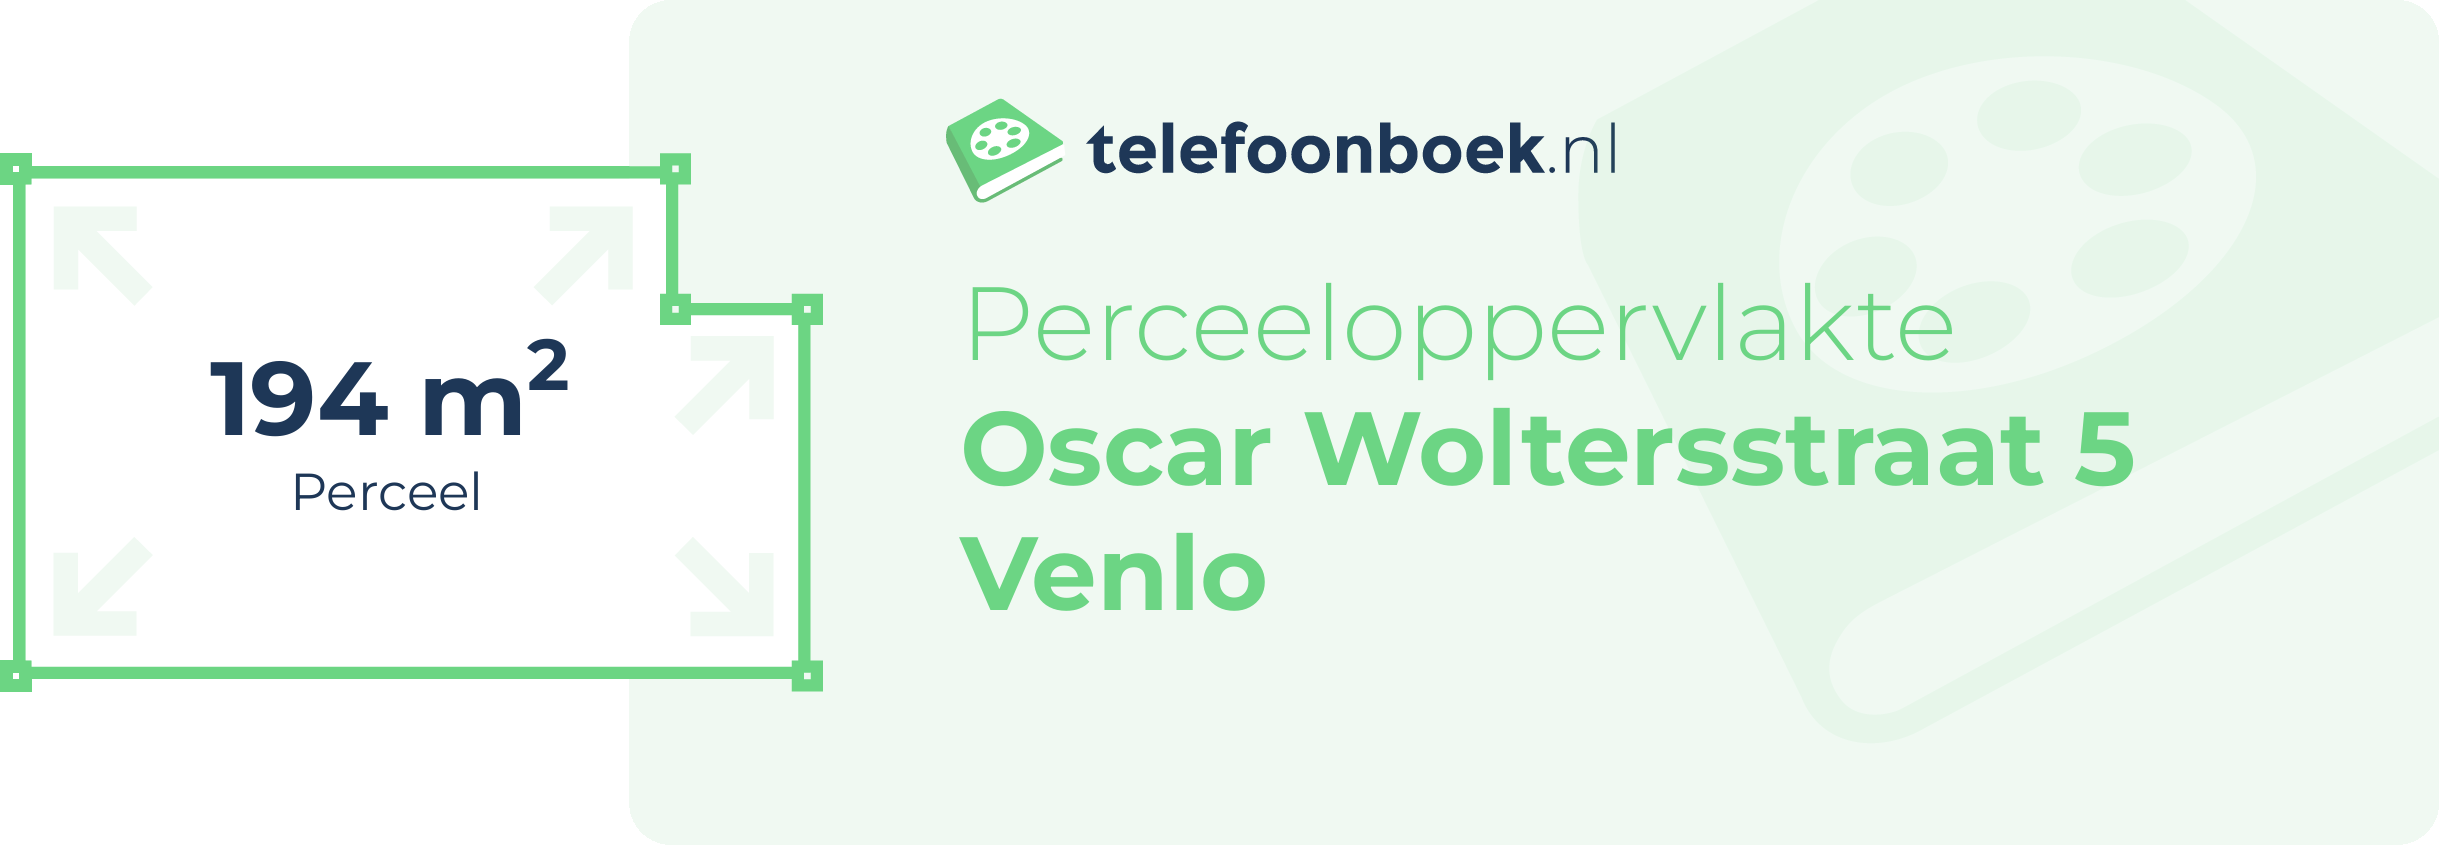 Perceeloppervlakte Oscar Woltersstraat 5 Venlo